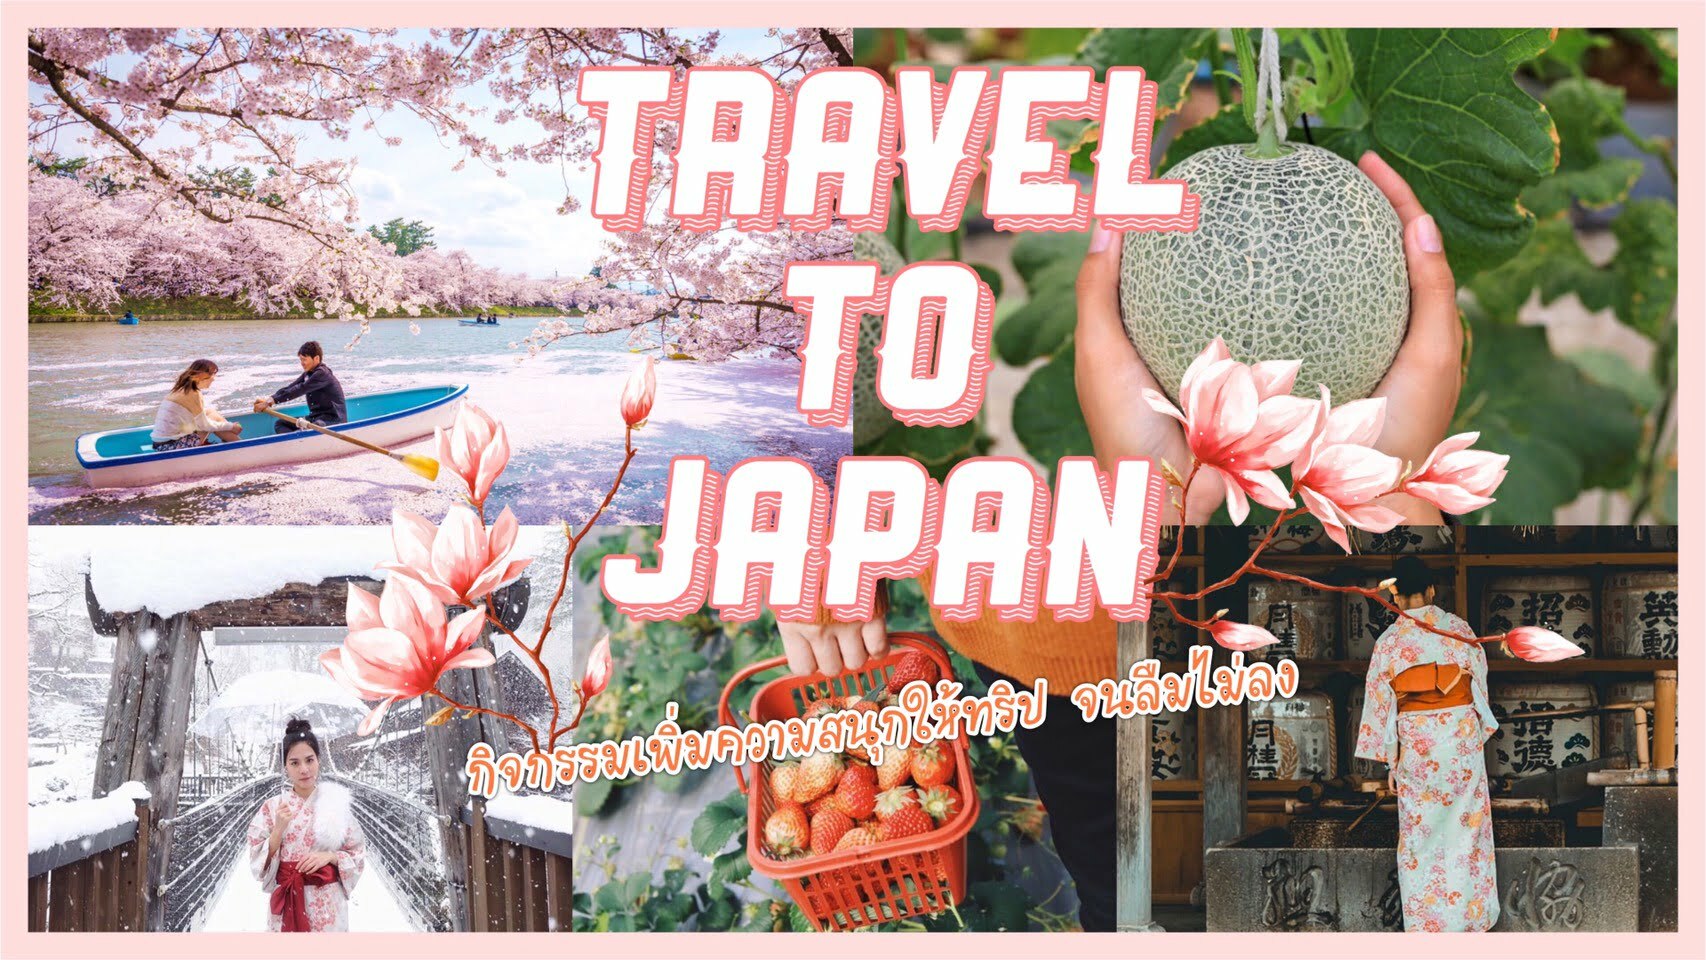 ทัวร์ญี่ปุ่น – ไปเที่ยวญี่ปุ่นทั้งที ทำอะไรดี แบบสนุกจนลืมไม่ลง